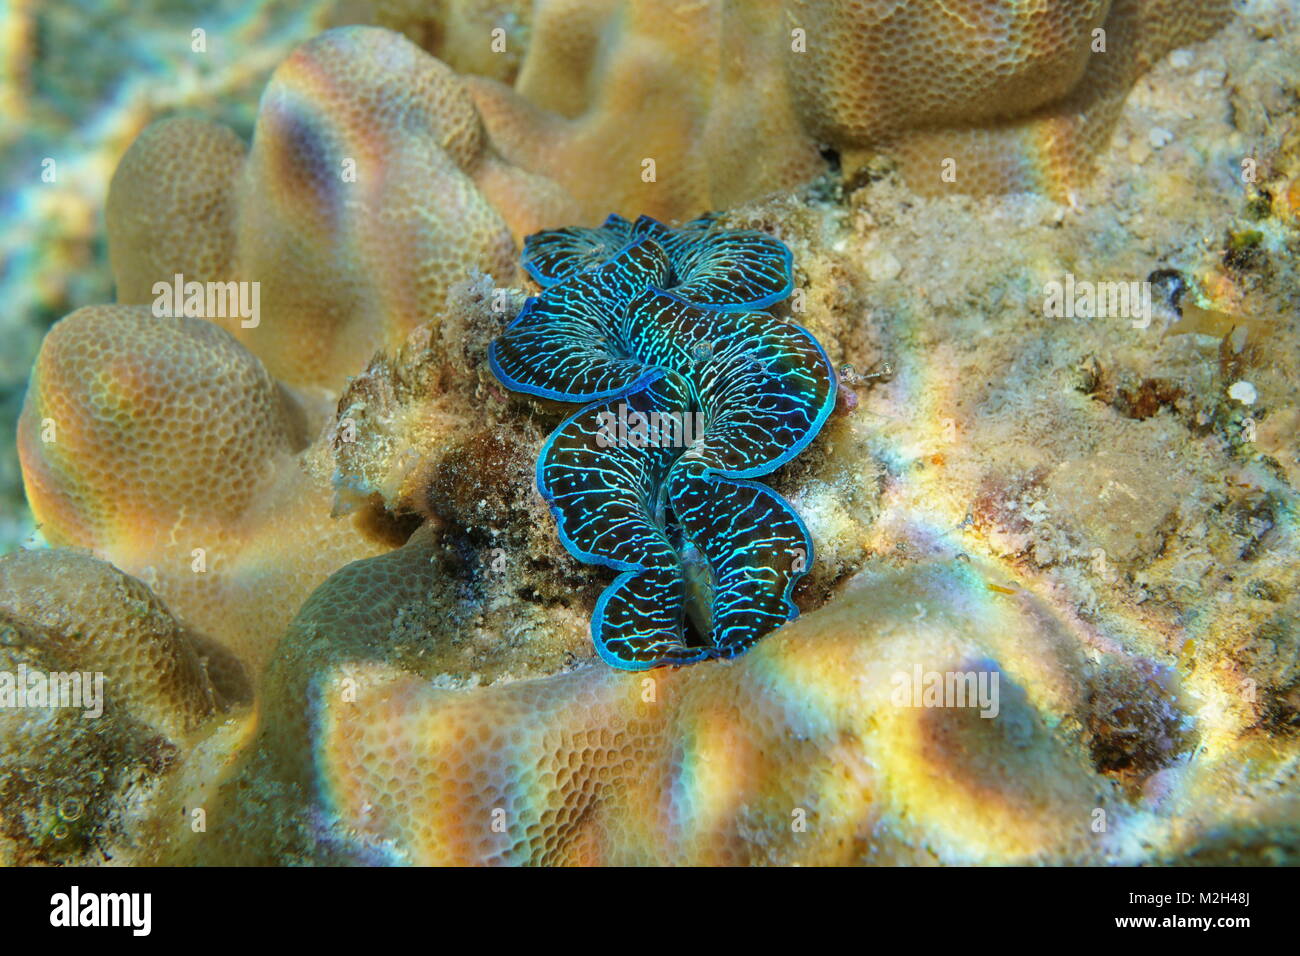 Un mollusque clam maxima bleu, Tridacna maxima, sous l'eau dans l'océan Pacifique, Rarotonga, îles Cook Banque D'Images